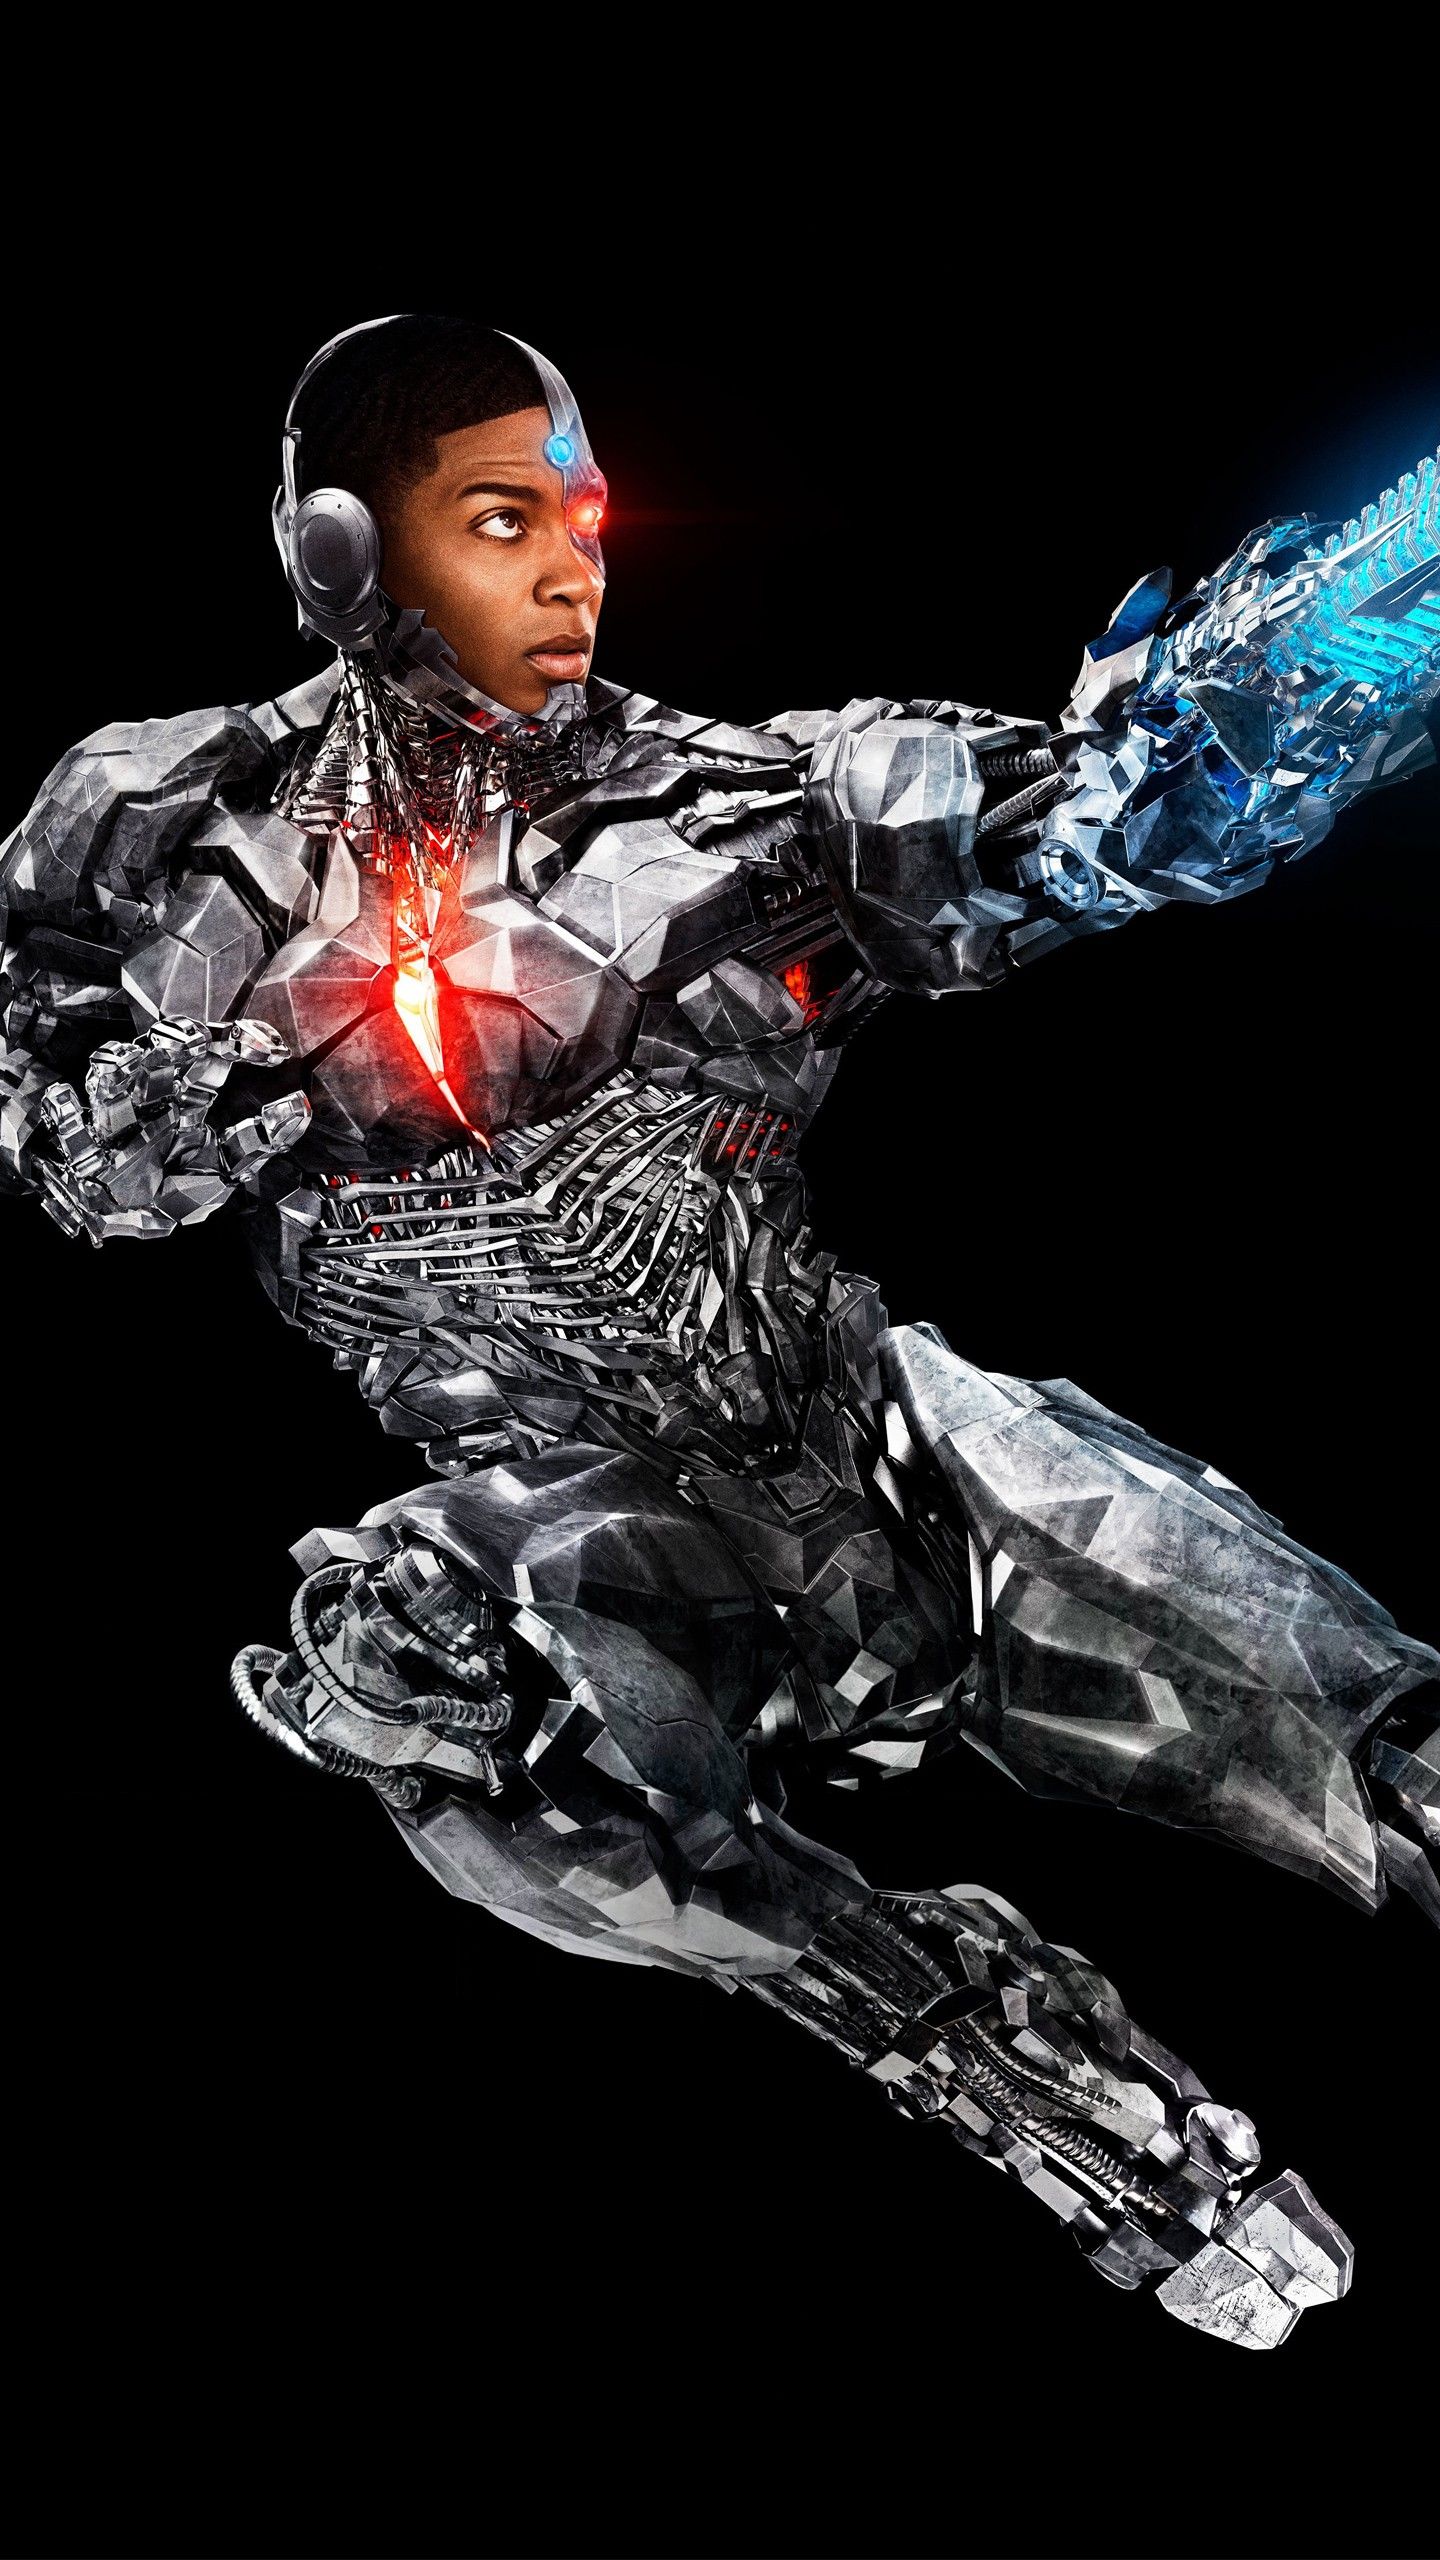 ScreenBeauty. Cyborg in Justice League 4K